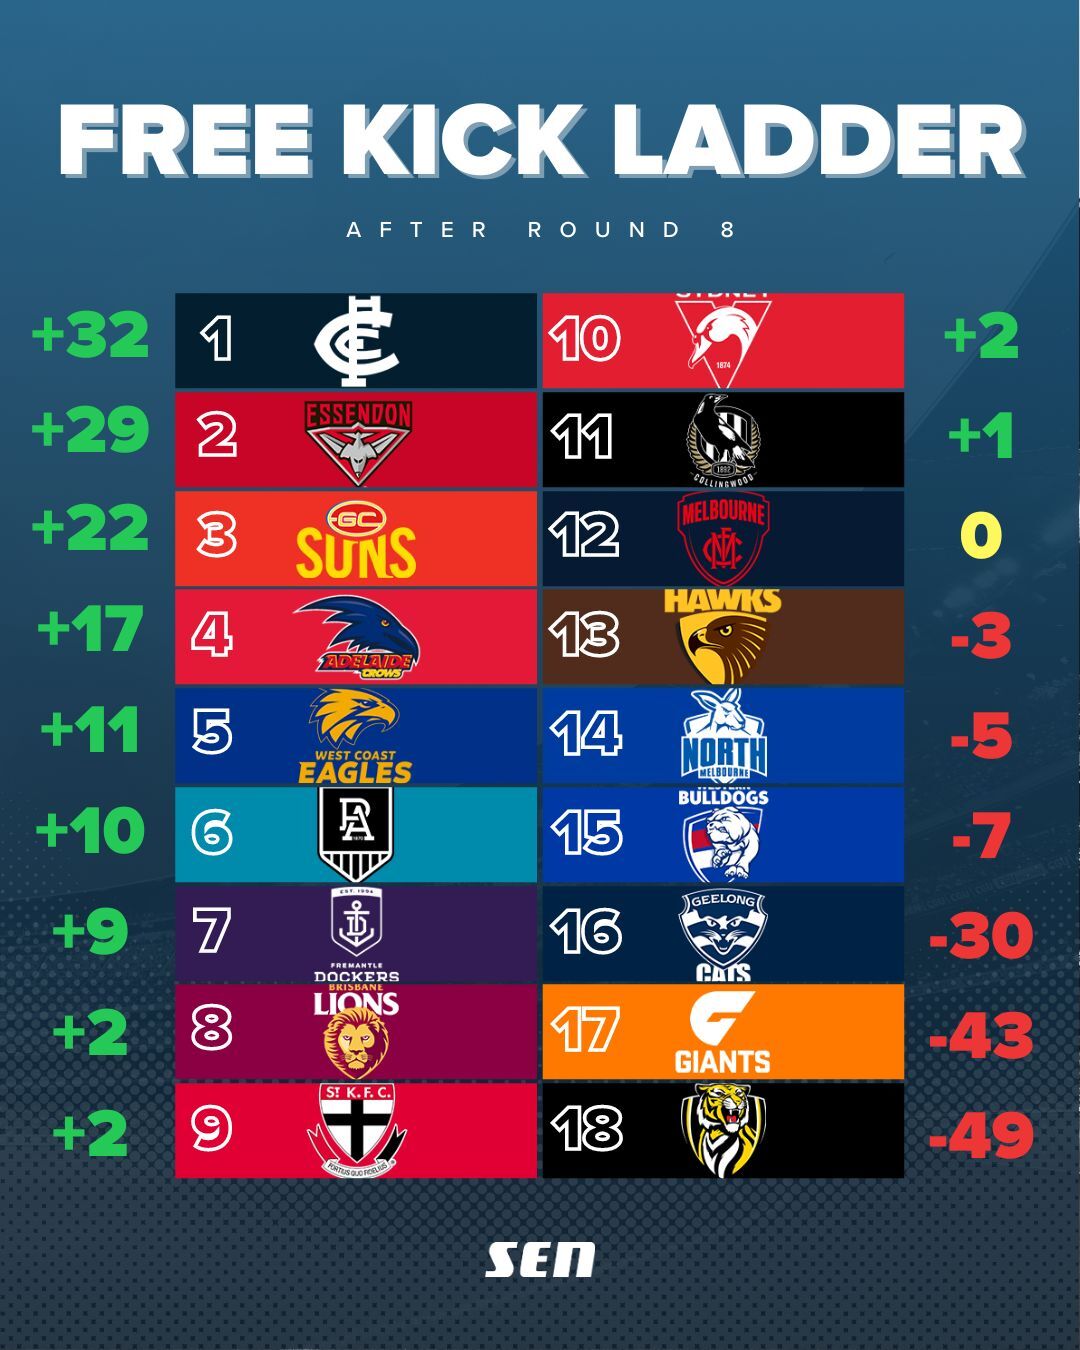 FK Ladder - Round 8